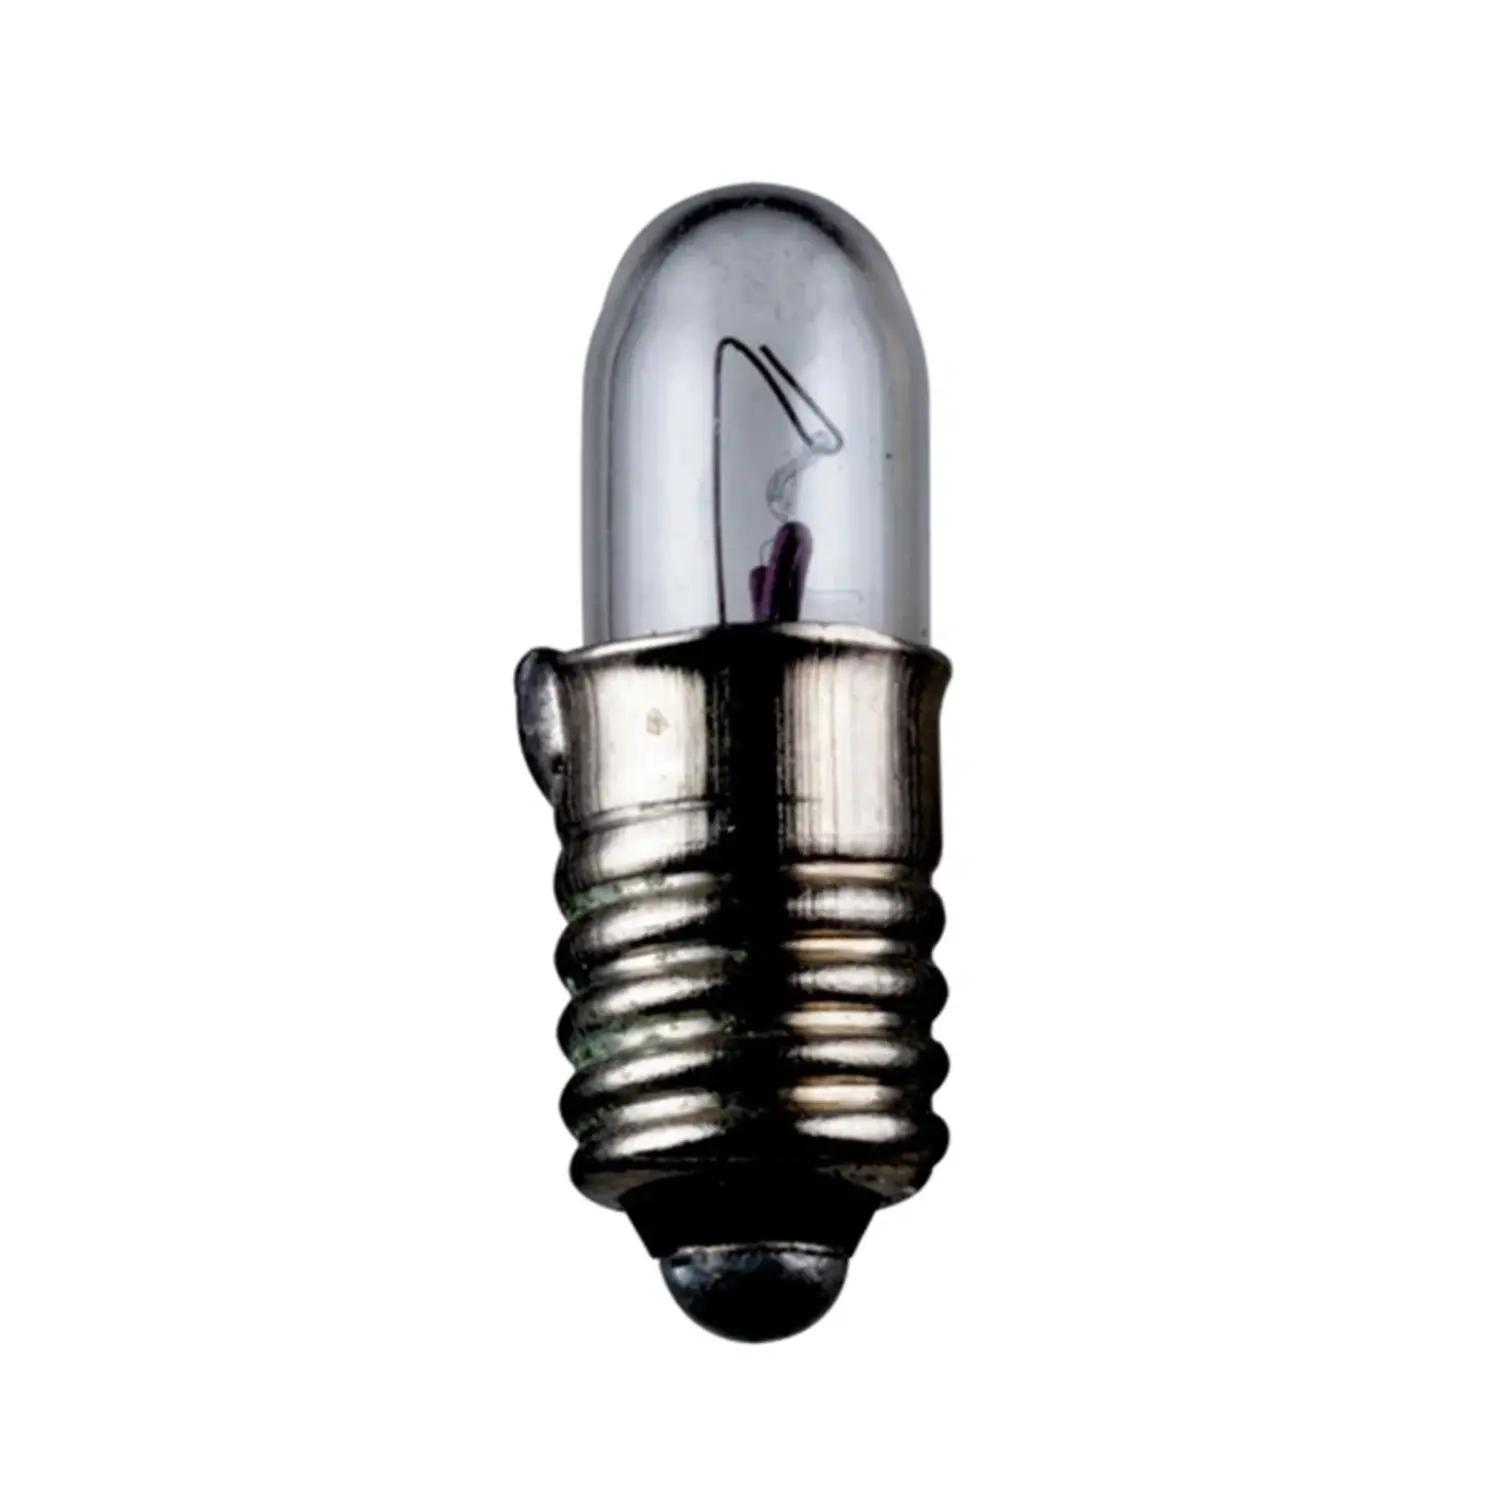 immagine del prodotto lampadina in miniatura modellismo treno e5.5 0,30 watt 6 volt